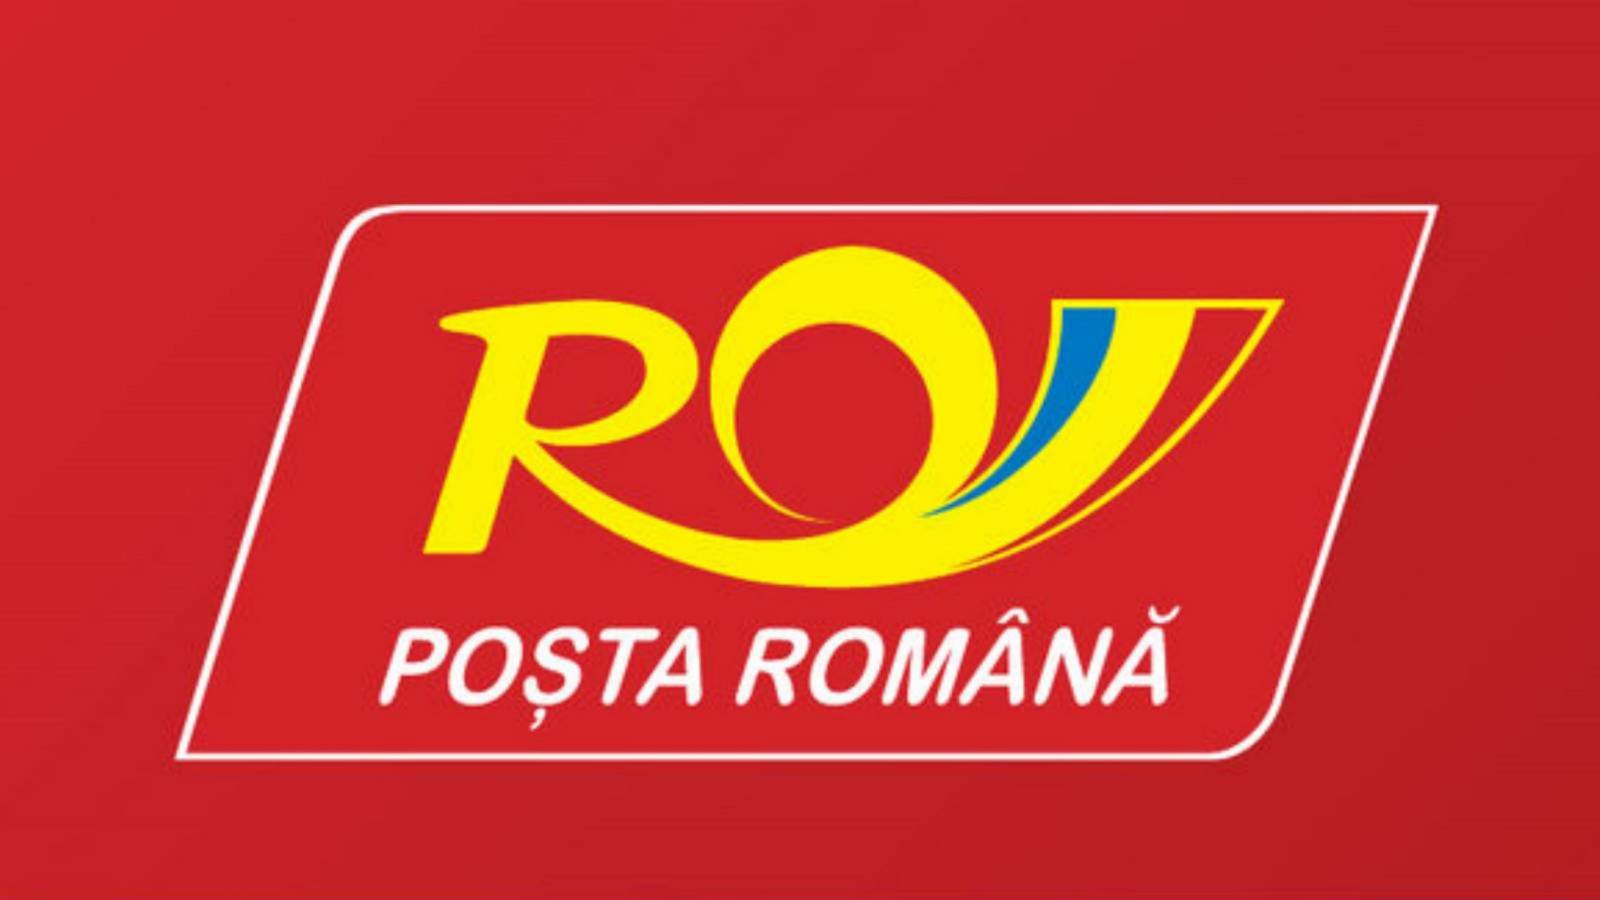 Rumänskt inlägg OBS, mycket viktigt meddelande för rumäner